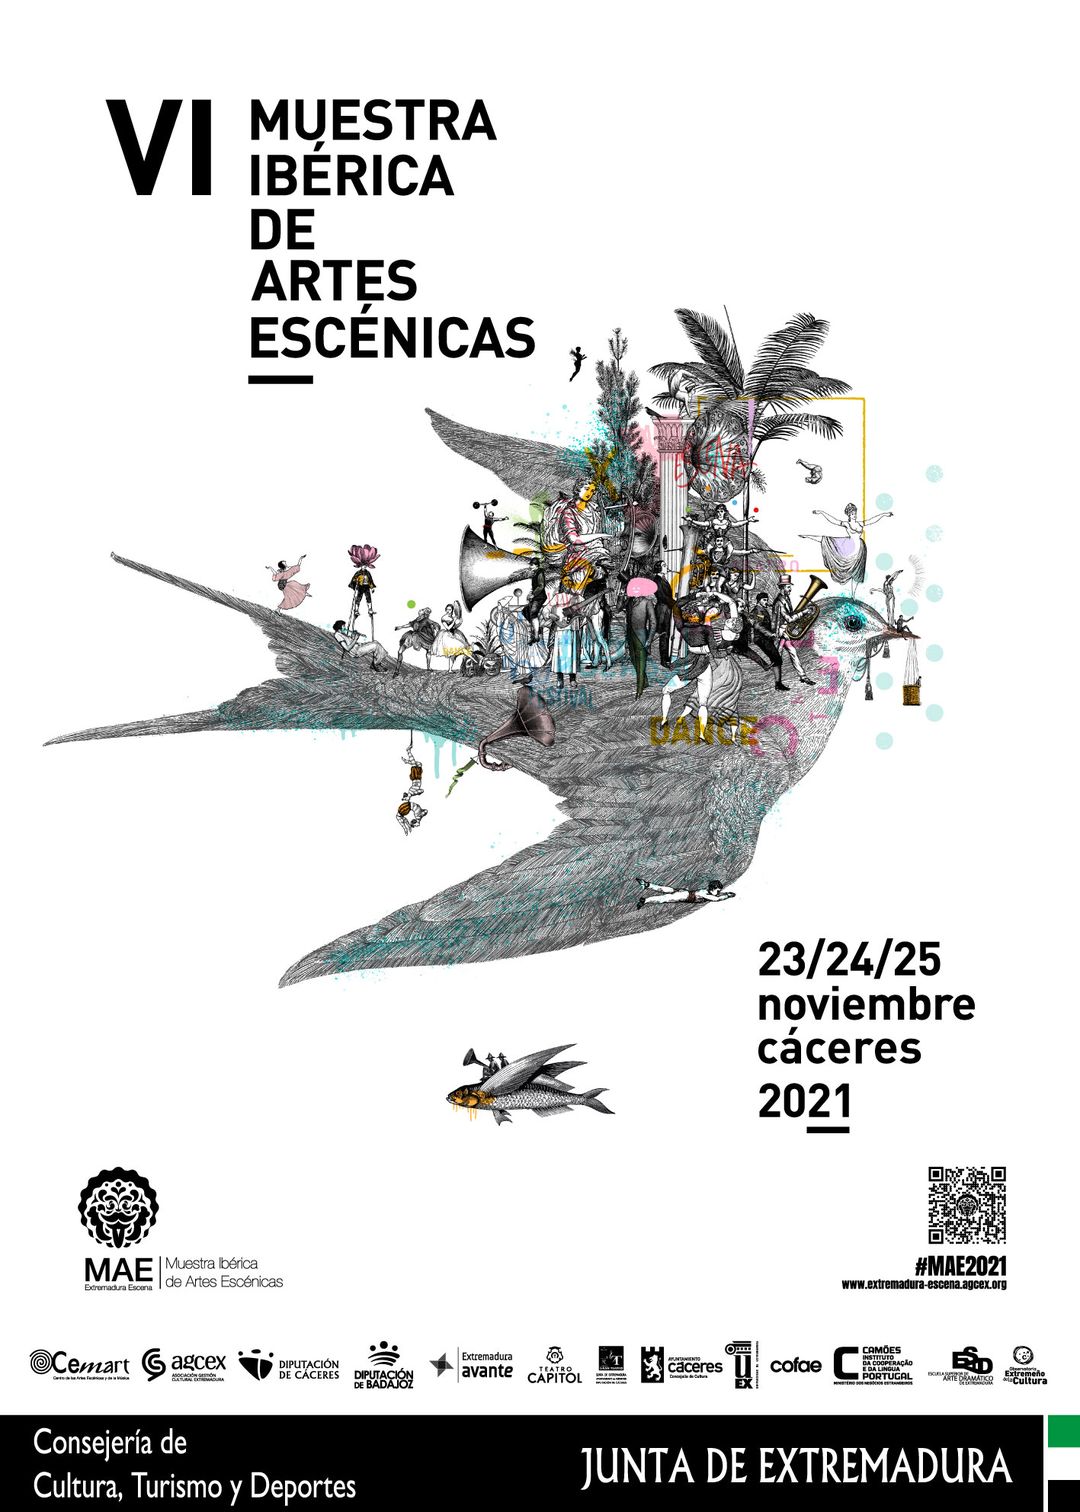 La Muestra Ibérica de Artes Escénicas arranca con cinco estrenos absolutos entre sus 18 espectáculos de teatro y danza